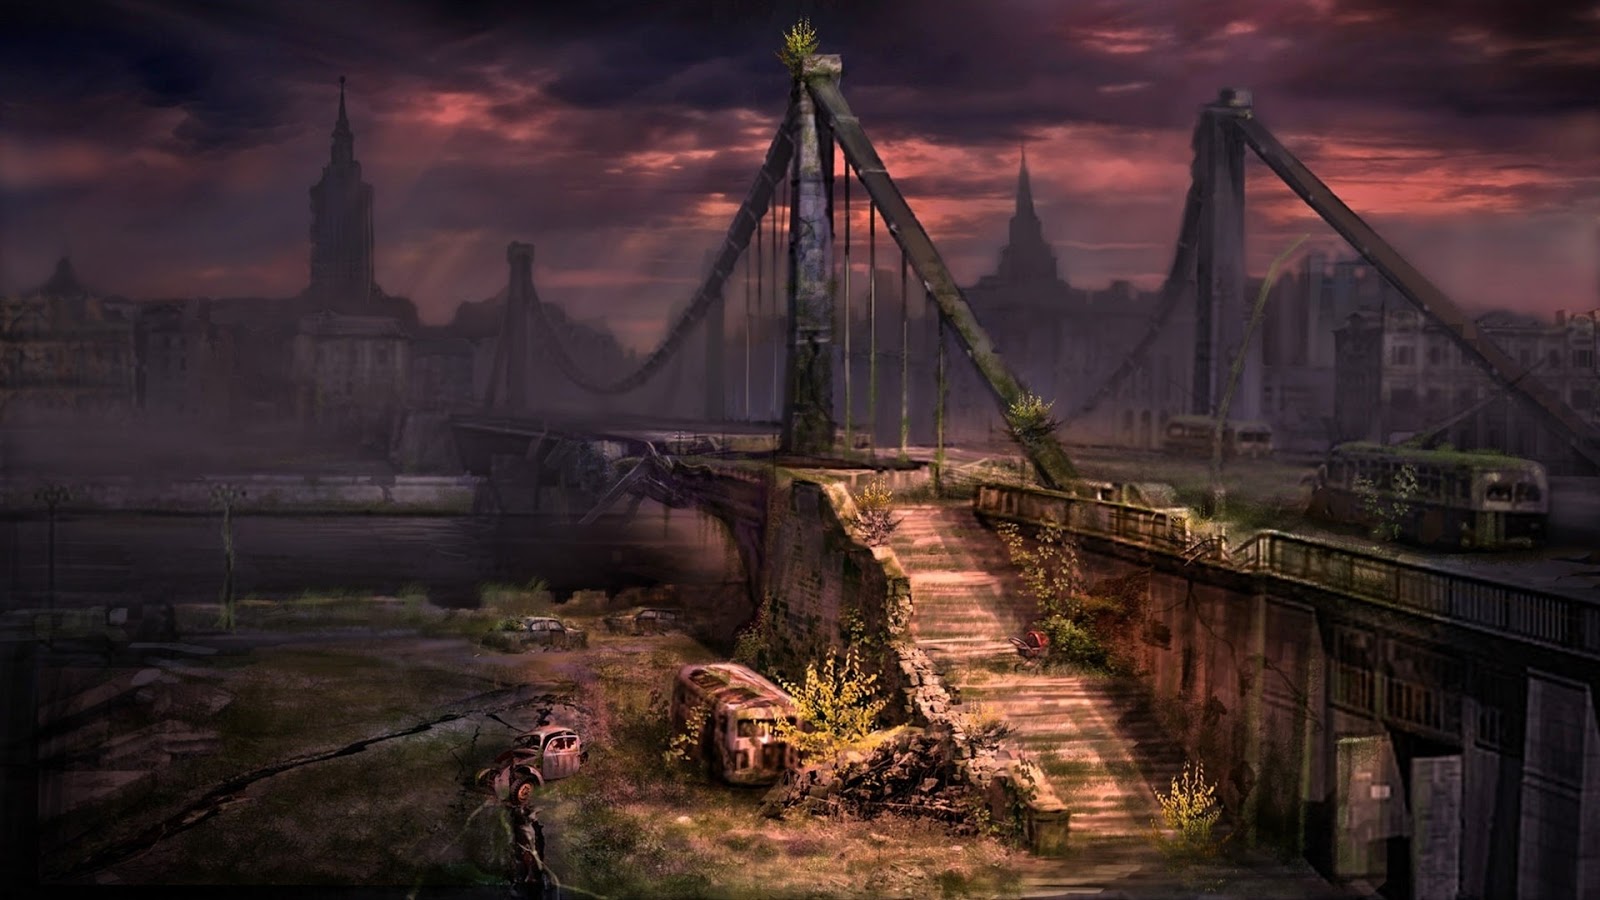 Apocalyptic Dark Scene Desktop Wallpaper And Background